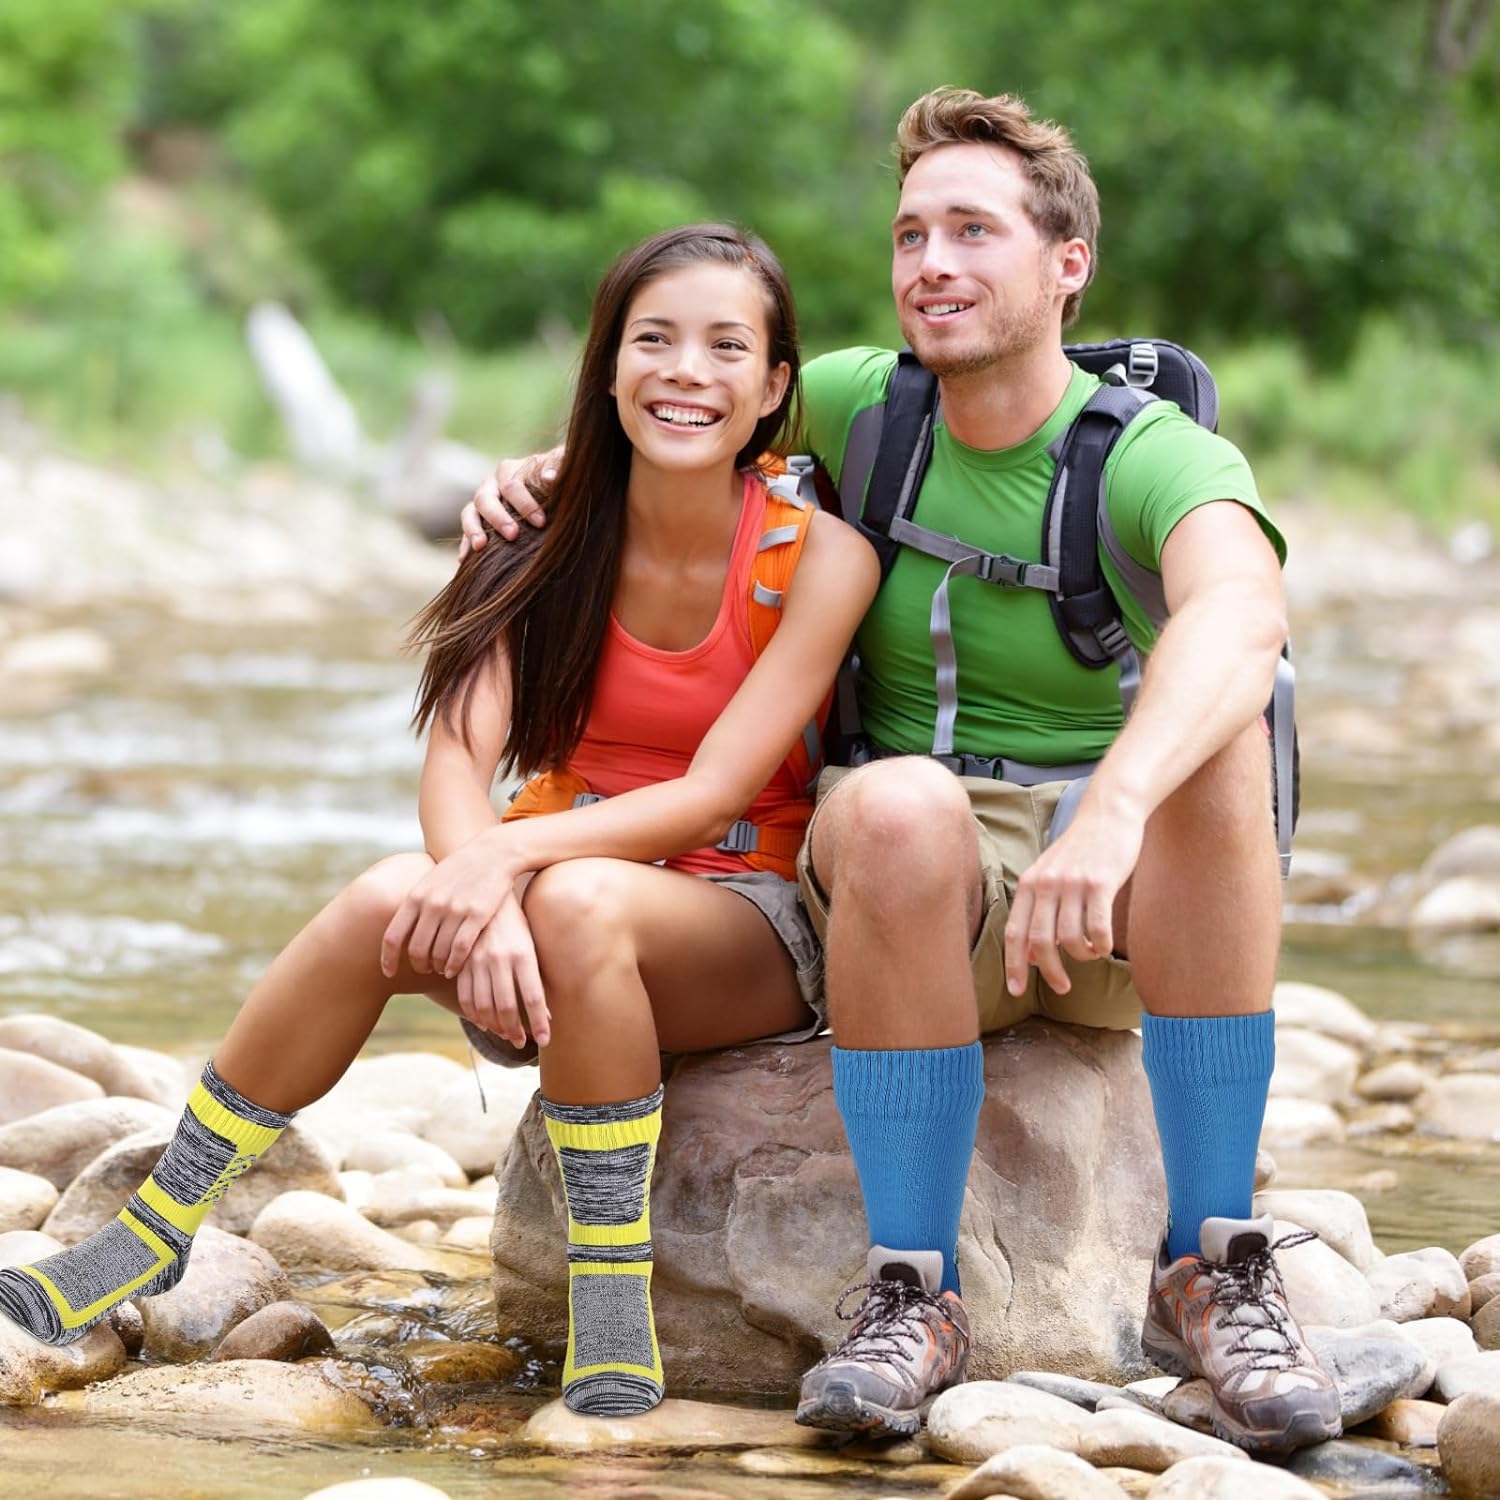 2 Pairs Waterproof Socks Unisex Waterproof Breathable Socks Outdoor Skiing Hiking Wading Fishing Socks for Men Women